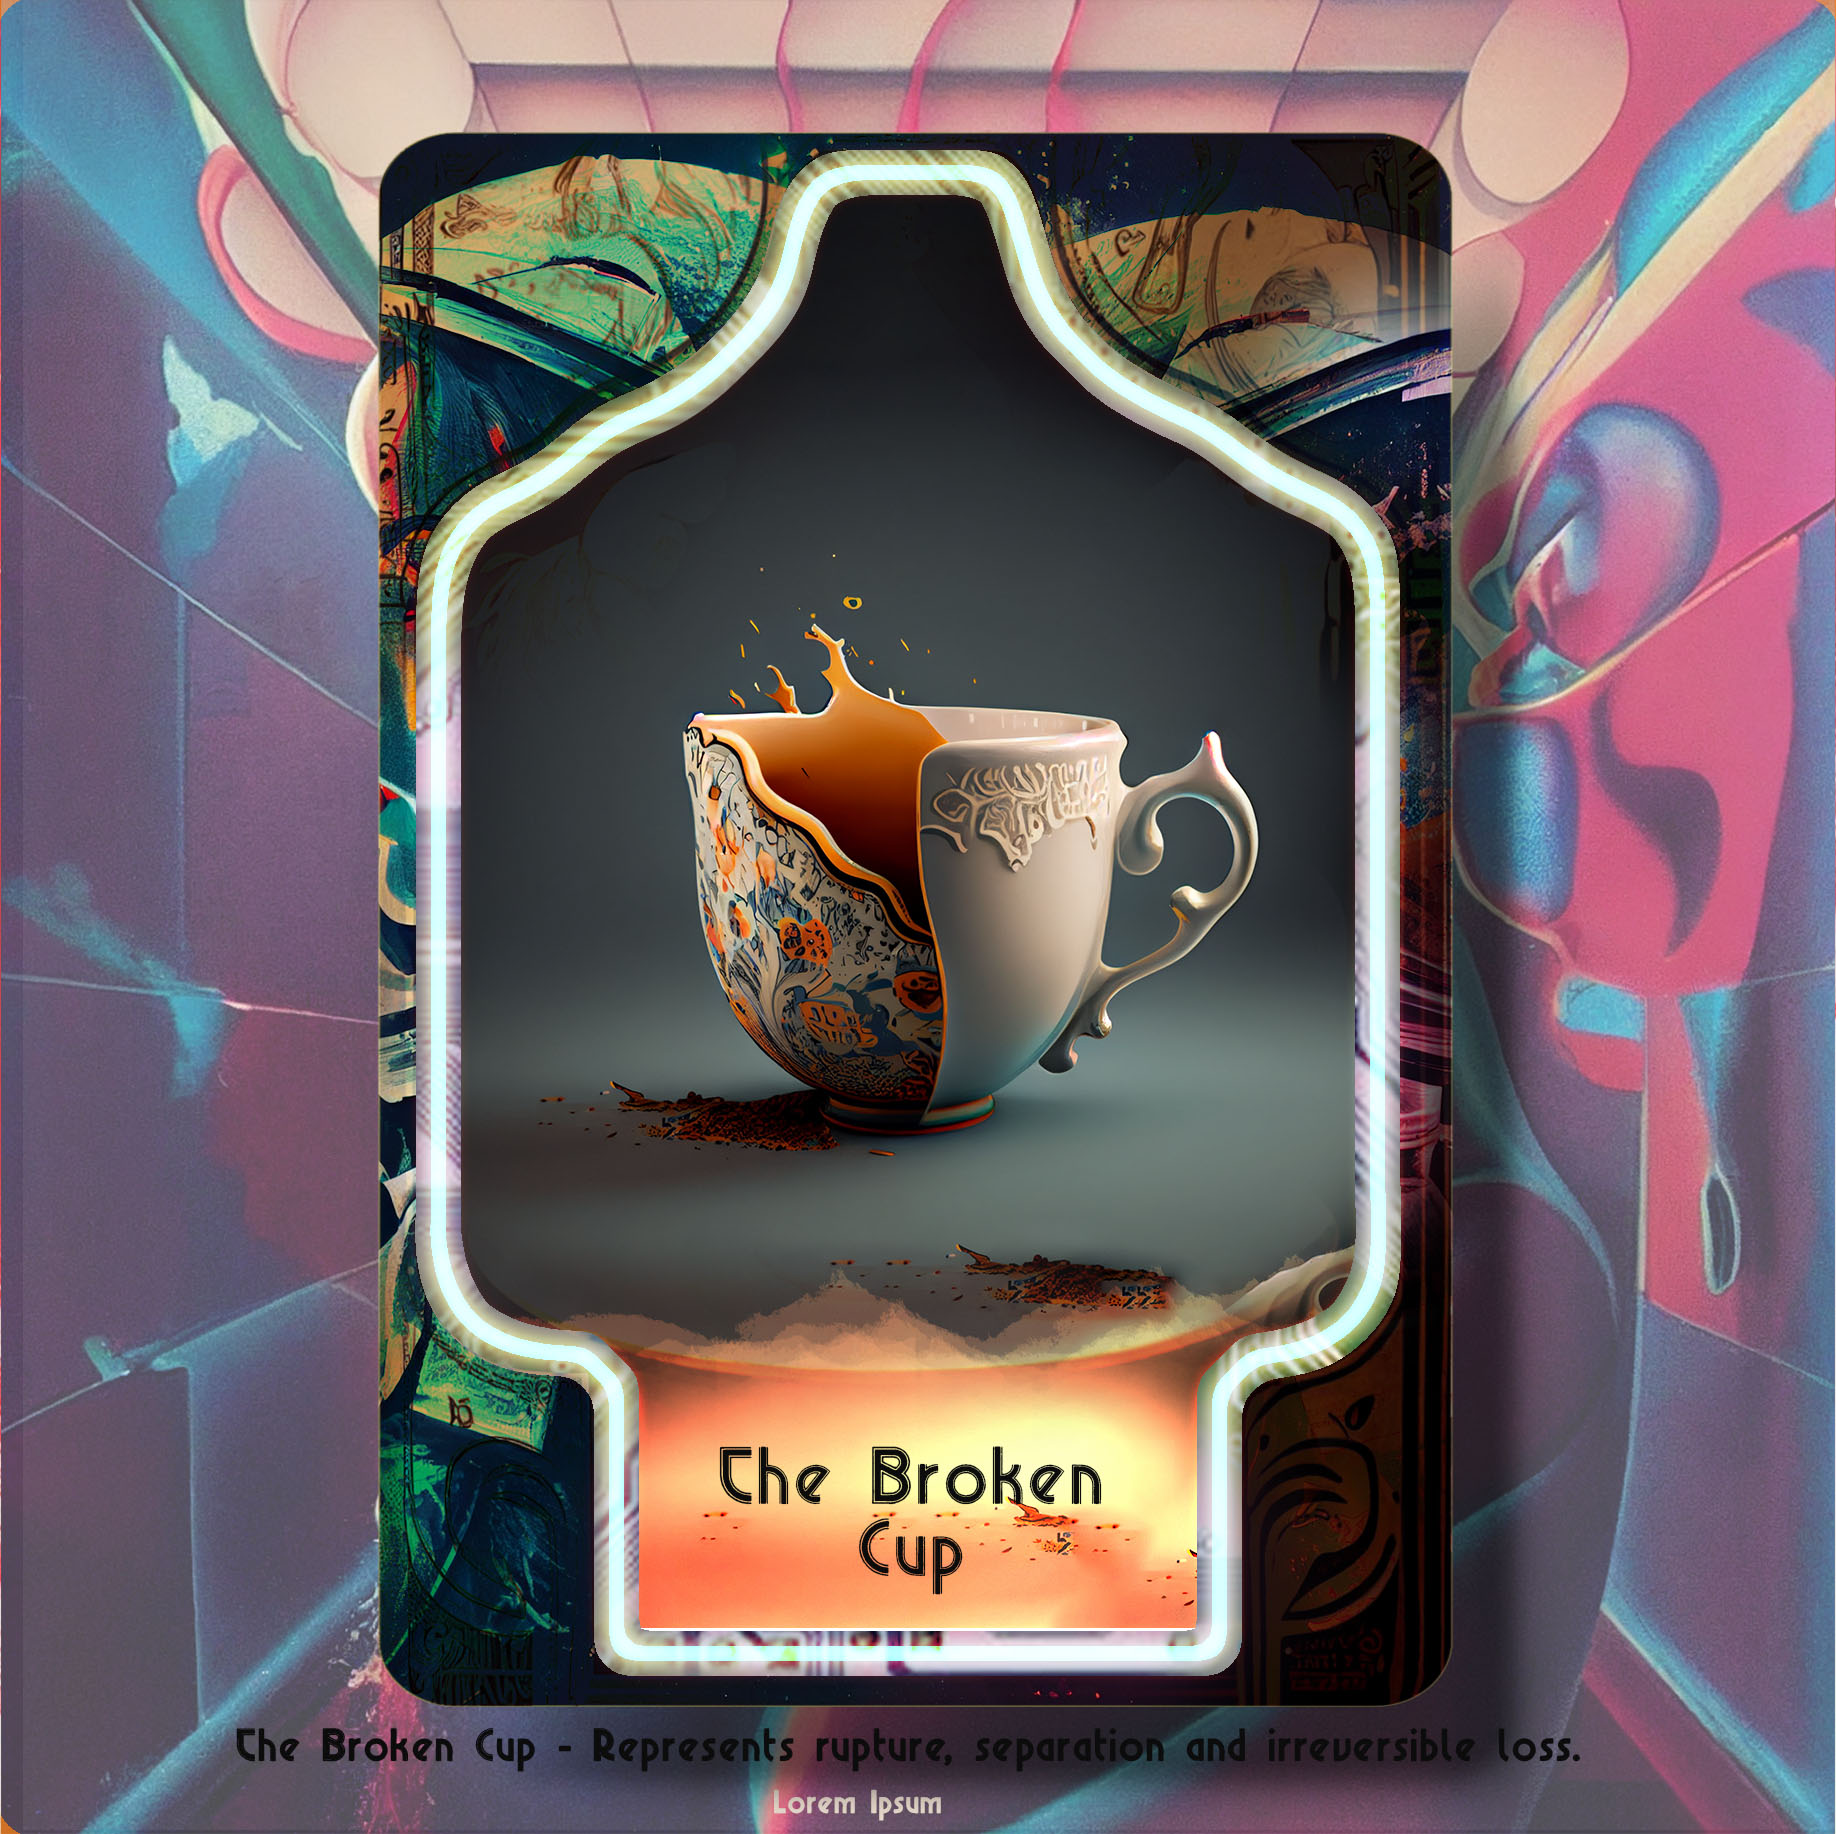 The Broken Cup asset